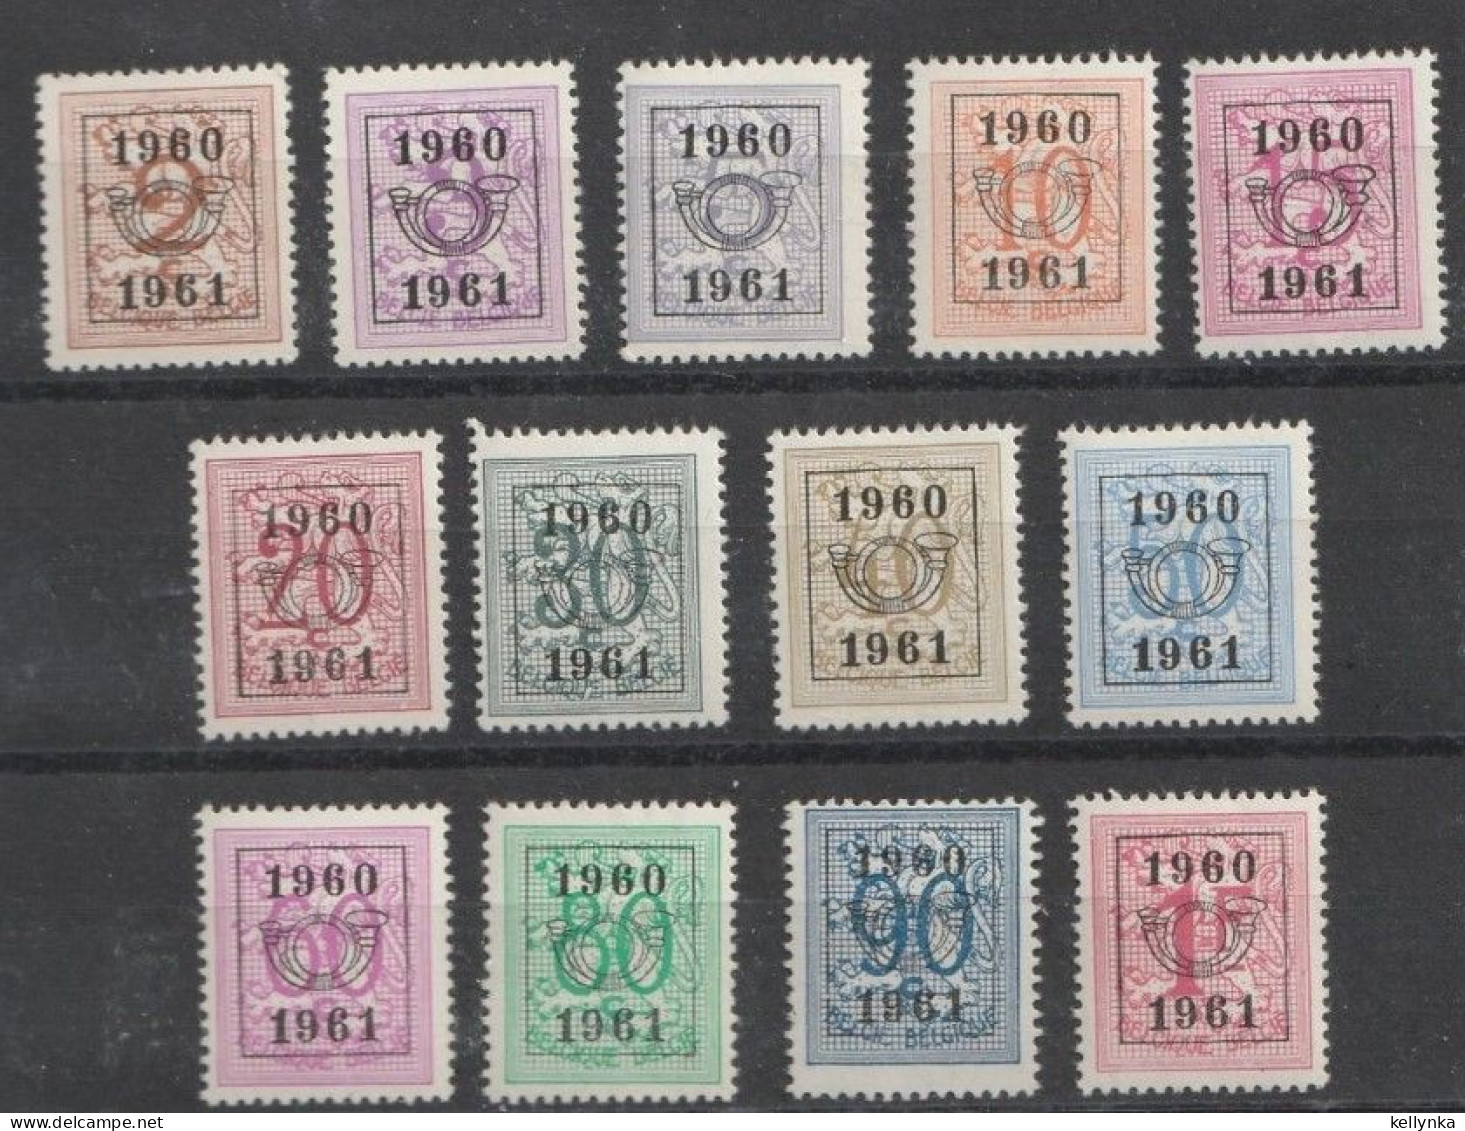 Belgique - Belgie - PRE699/711 - Préoblitérés - Série 53 - 1960 - MNH - Typo Precancels 1951-80 (Figure On Lion)